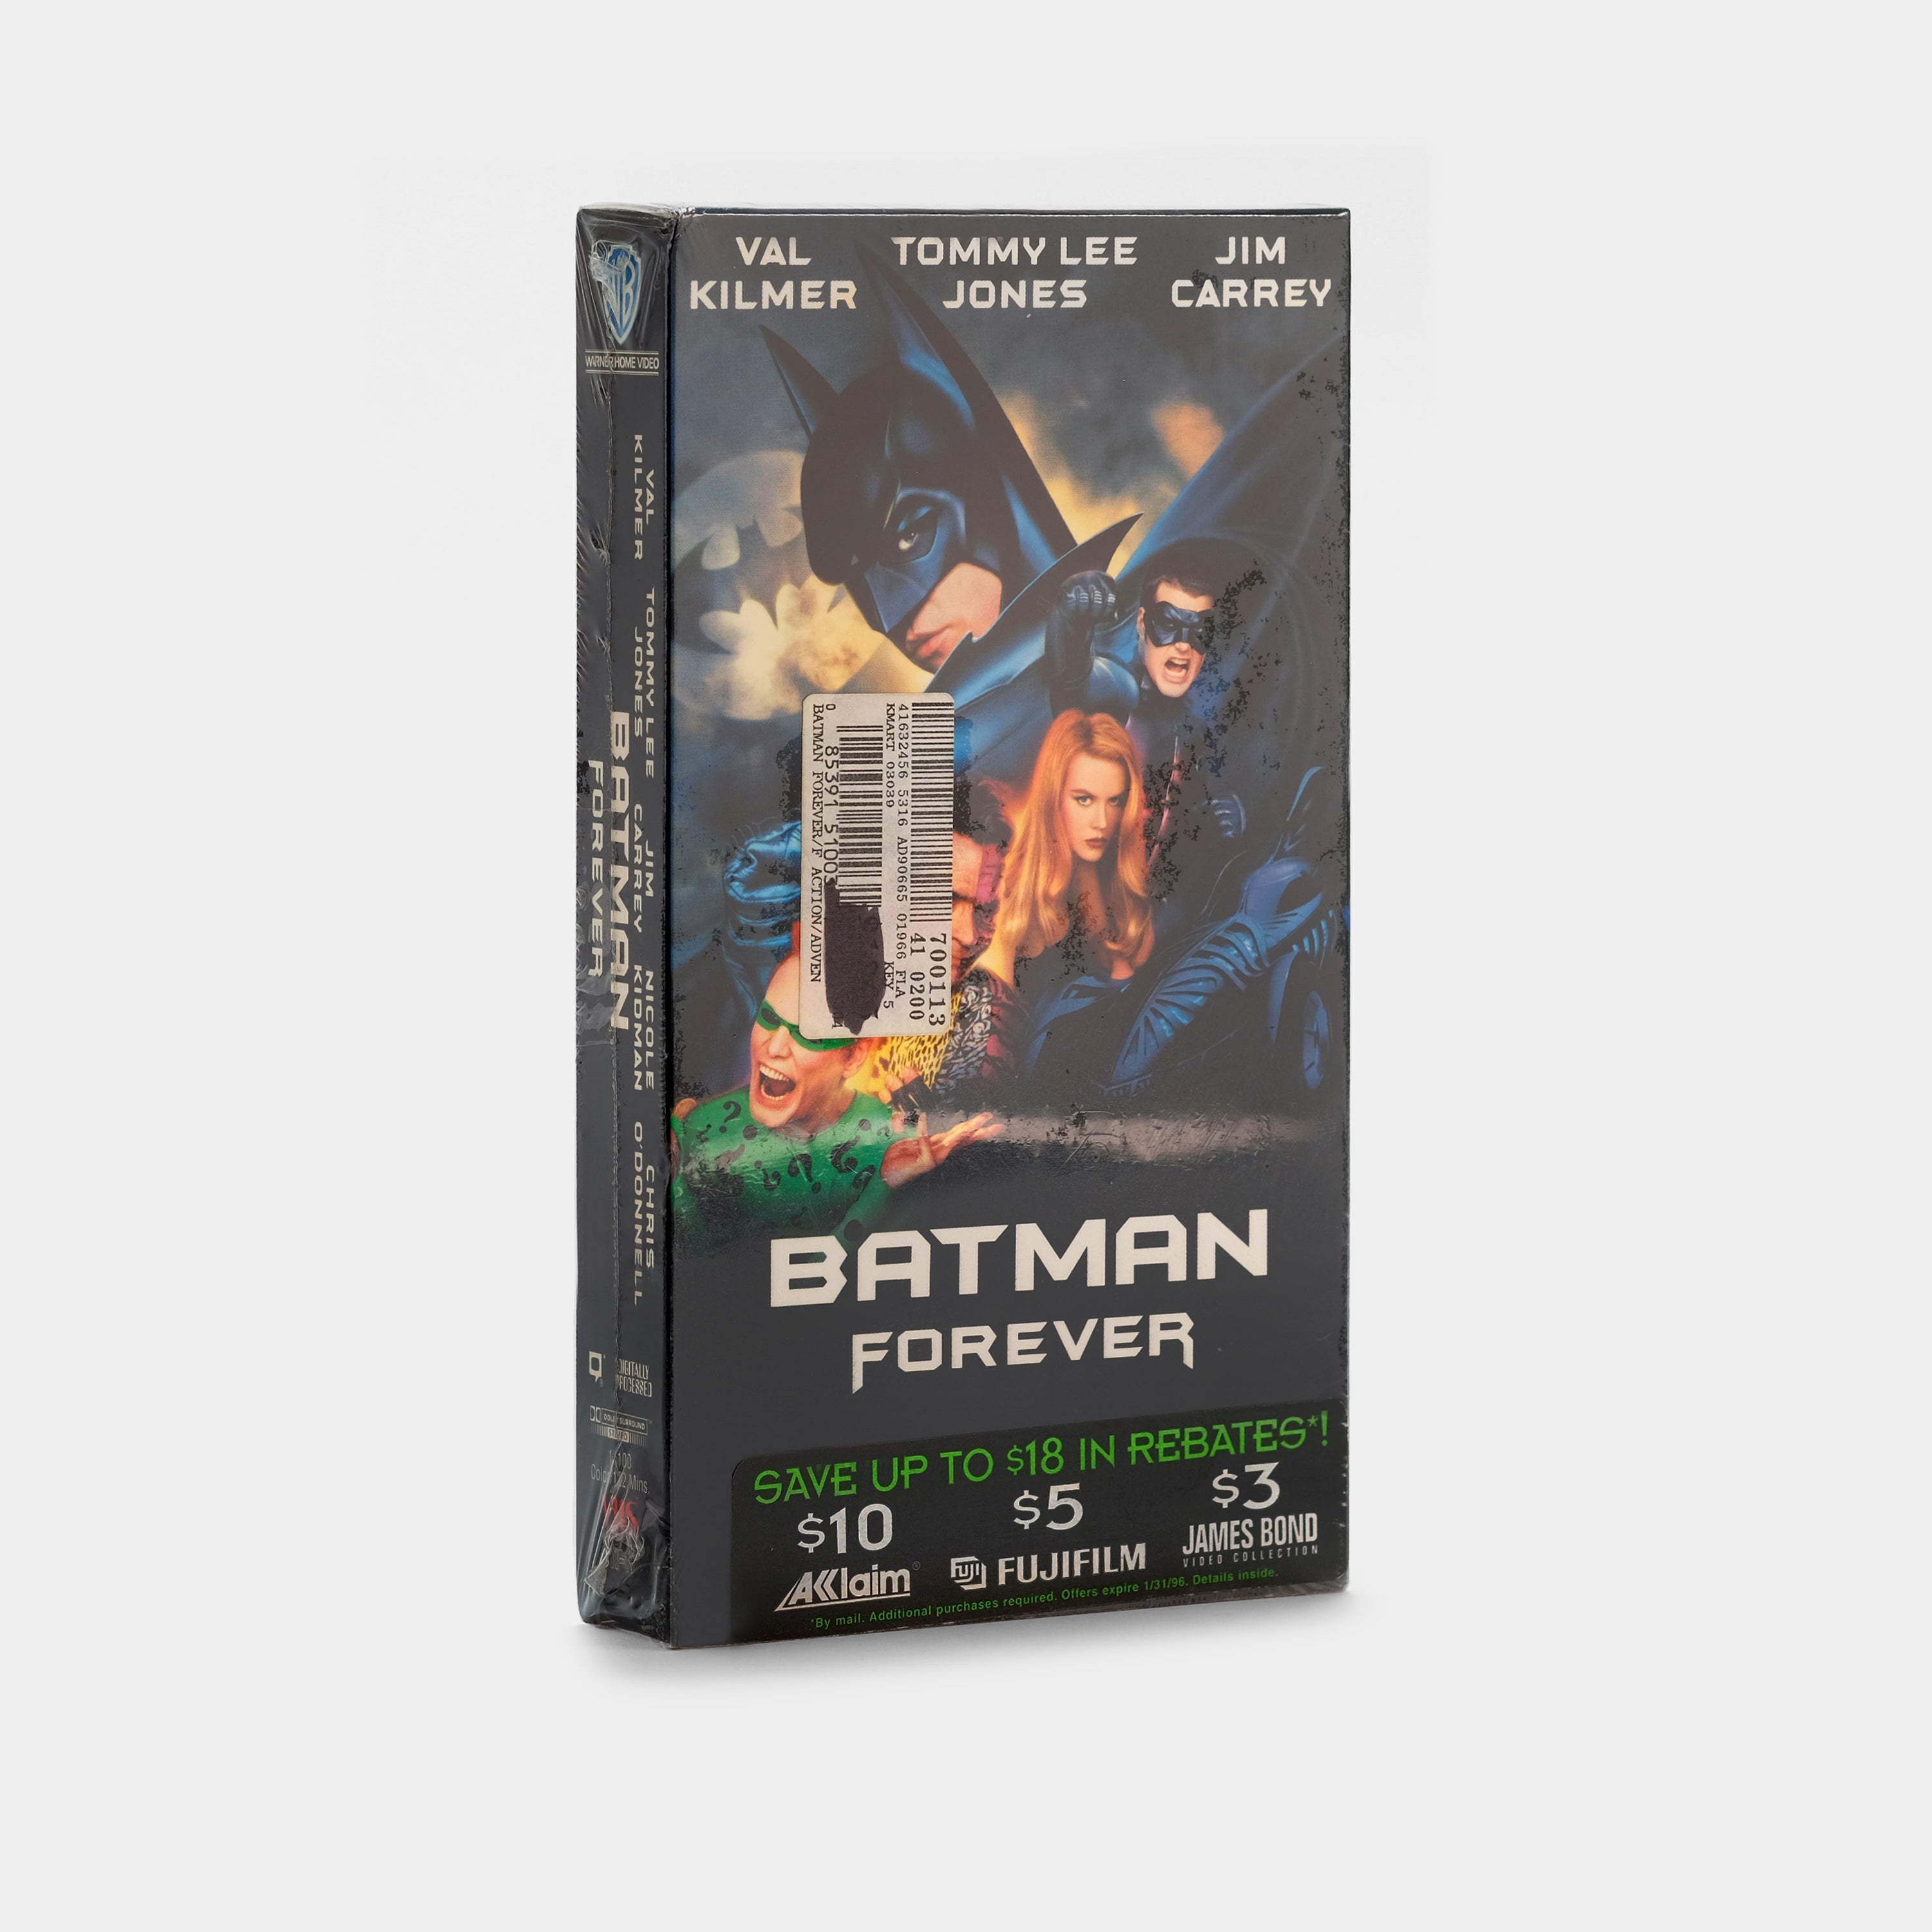 Batman Forever (Sealed) VHS Tape